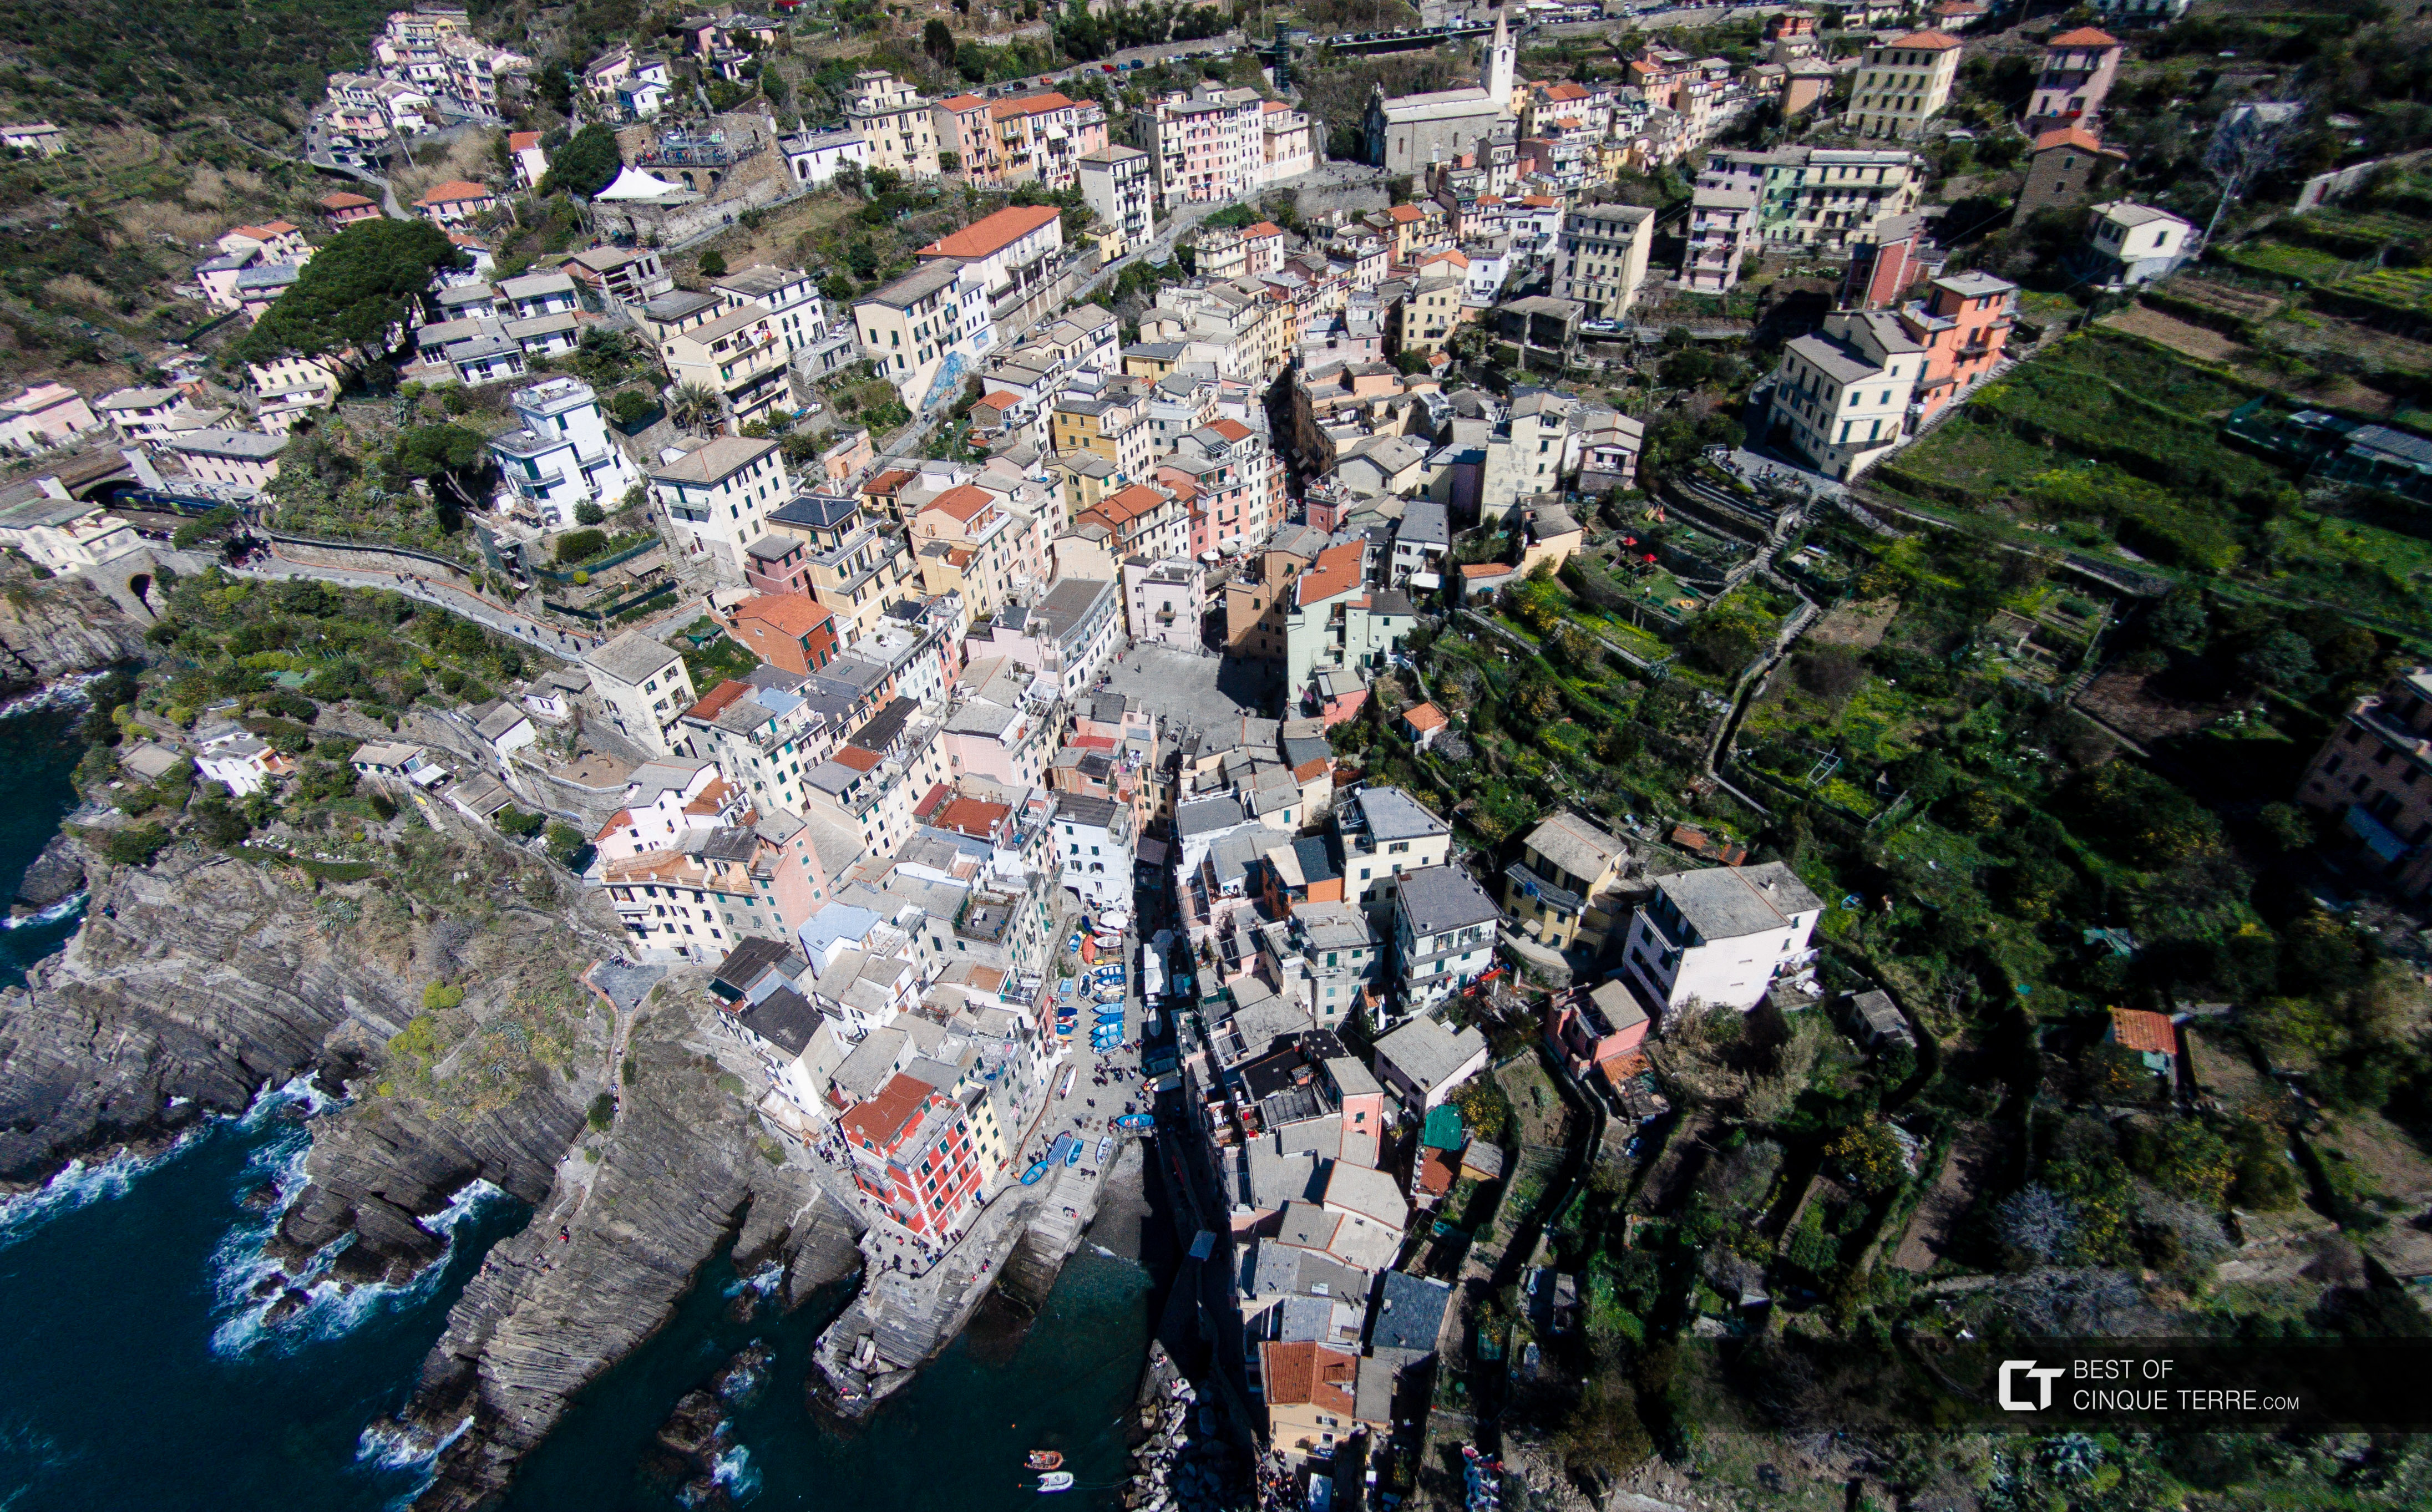 Vista aérea da vila, Riomaggiore, Cinque Terre, Itália